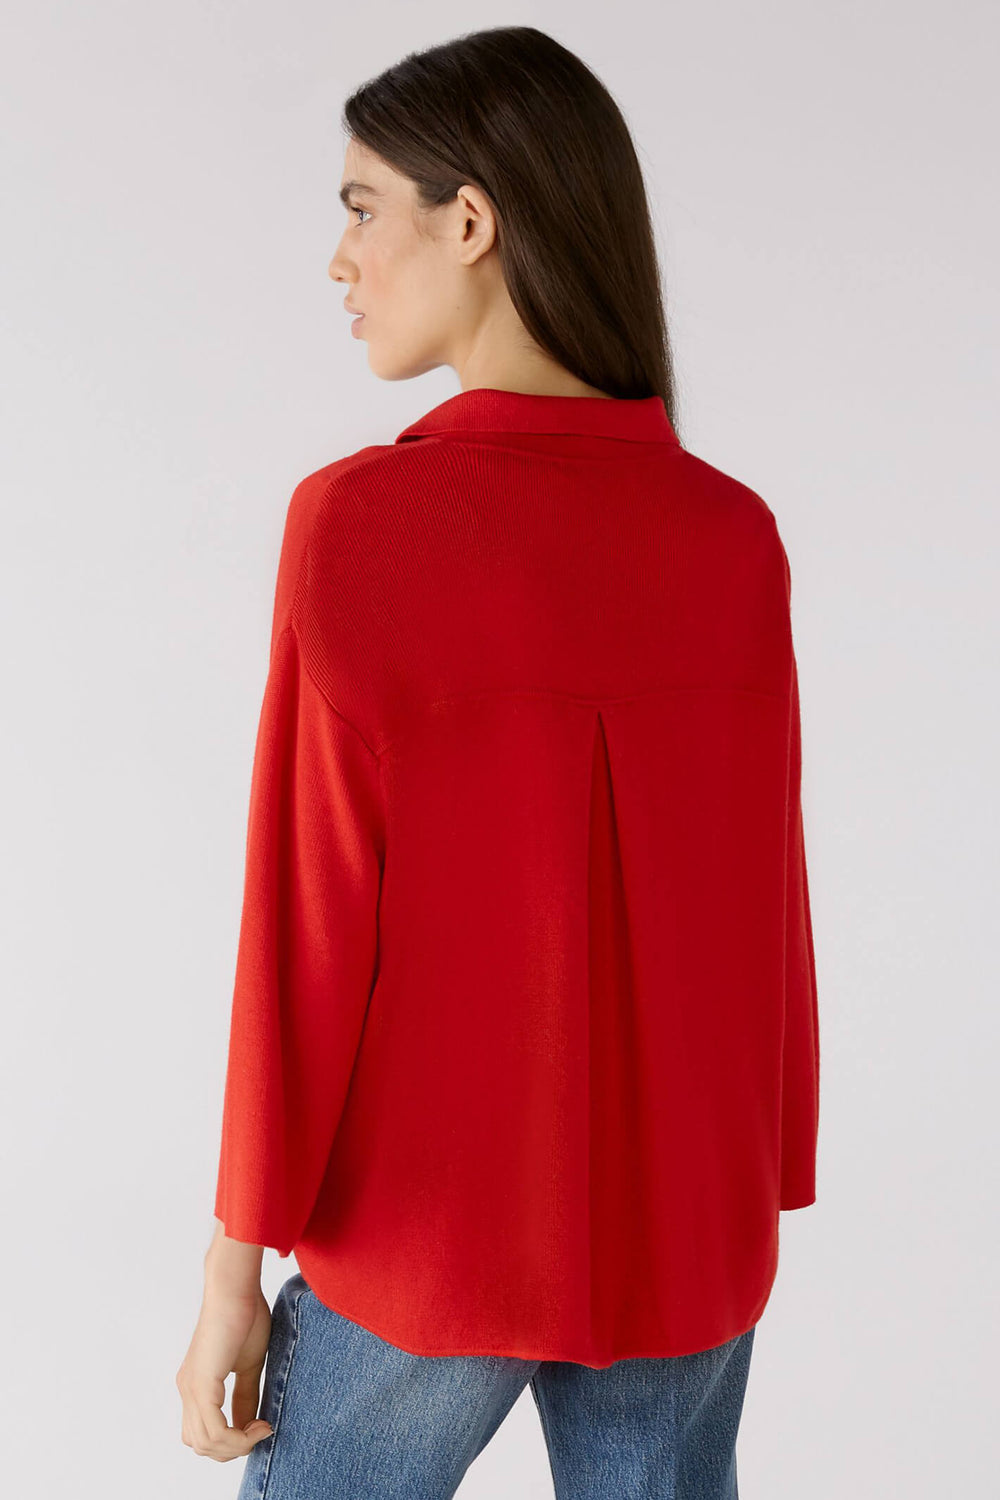 Oui 79613 Chinese Red Knit Shirt - Olivia Grace Fashion